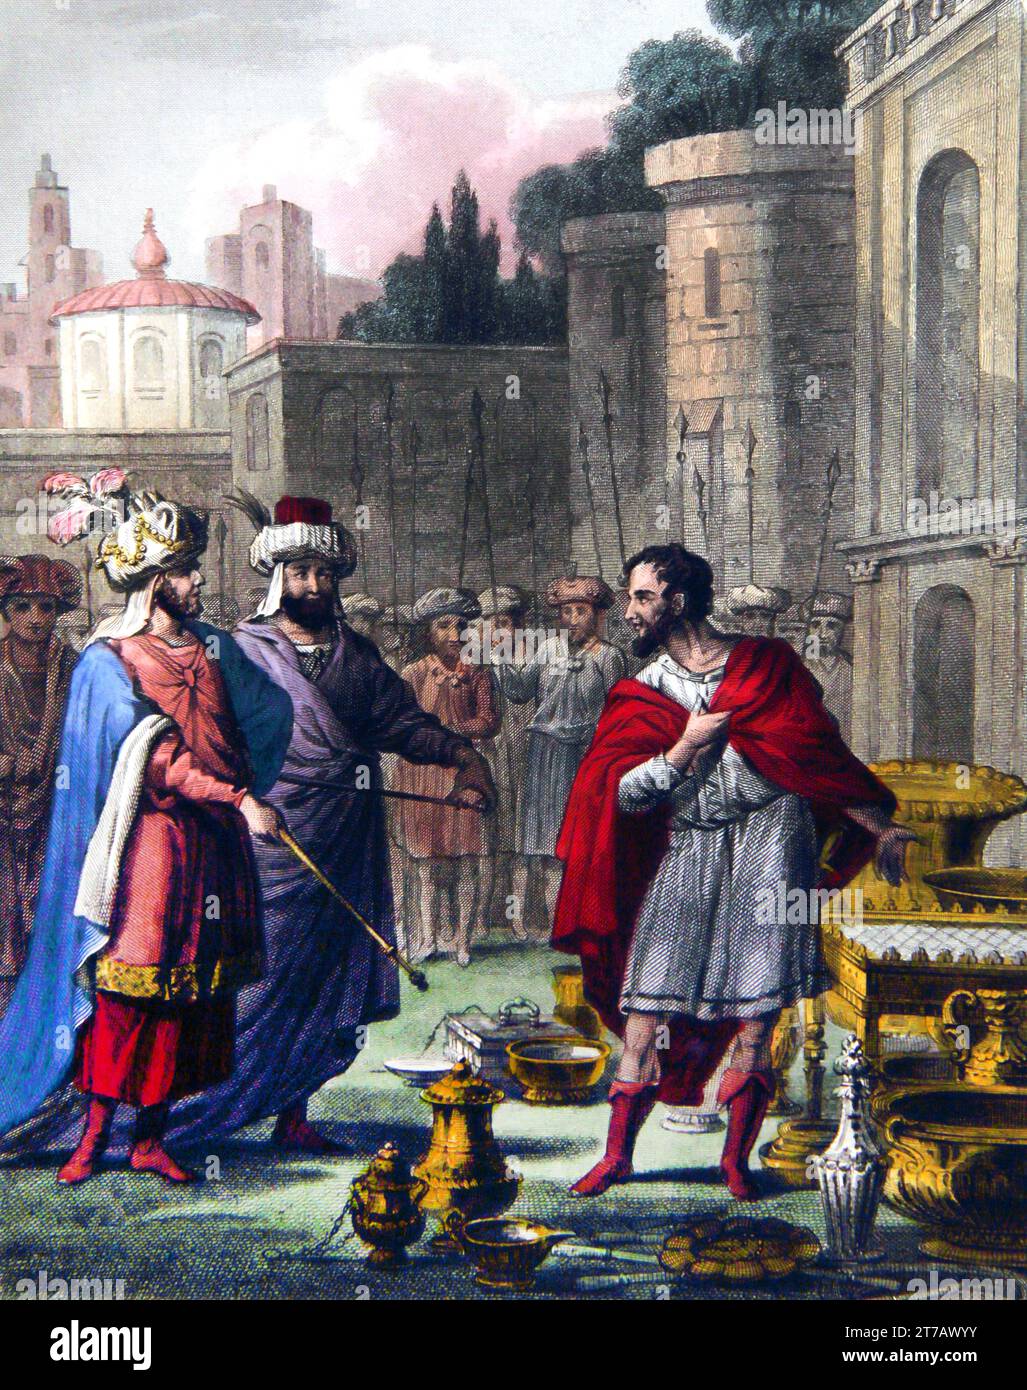 Illustration de Cyrus Restoreth le vaisseau du Temple (Esdras) - Cyrus le Grand a retourné les vaisseaux sacrés du Temple de Jérusalem du soi Banque D'Images